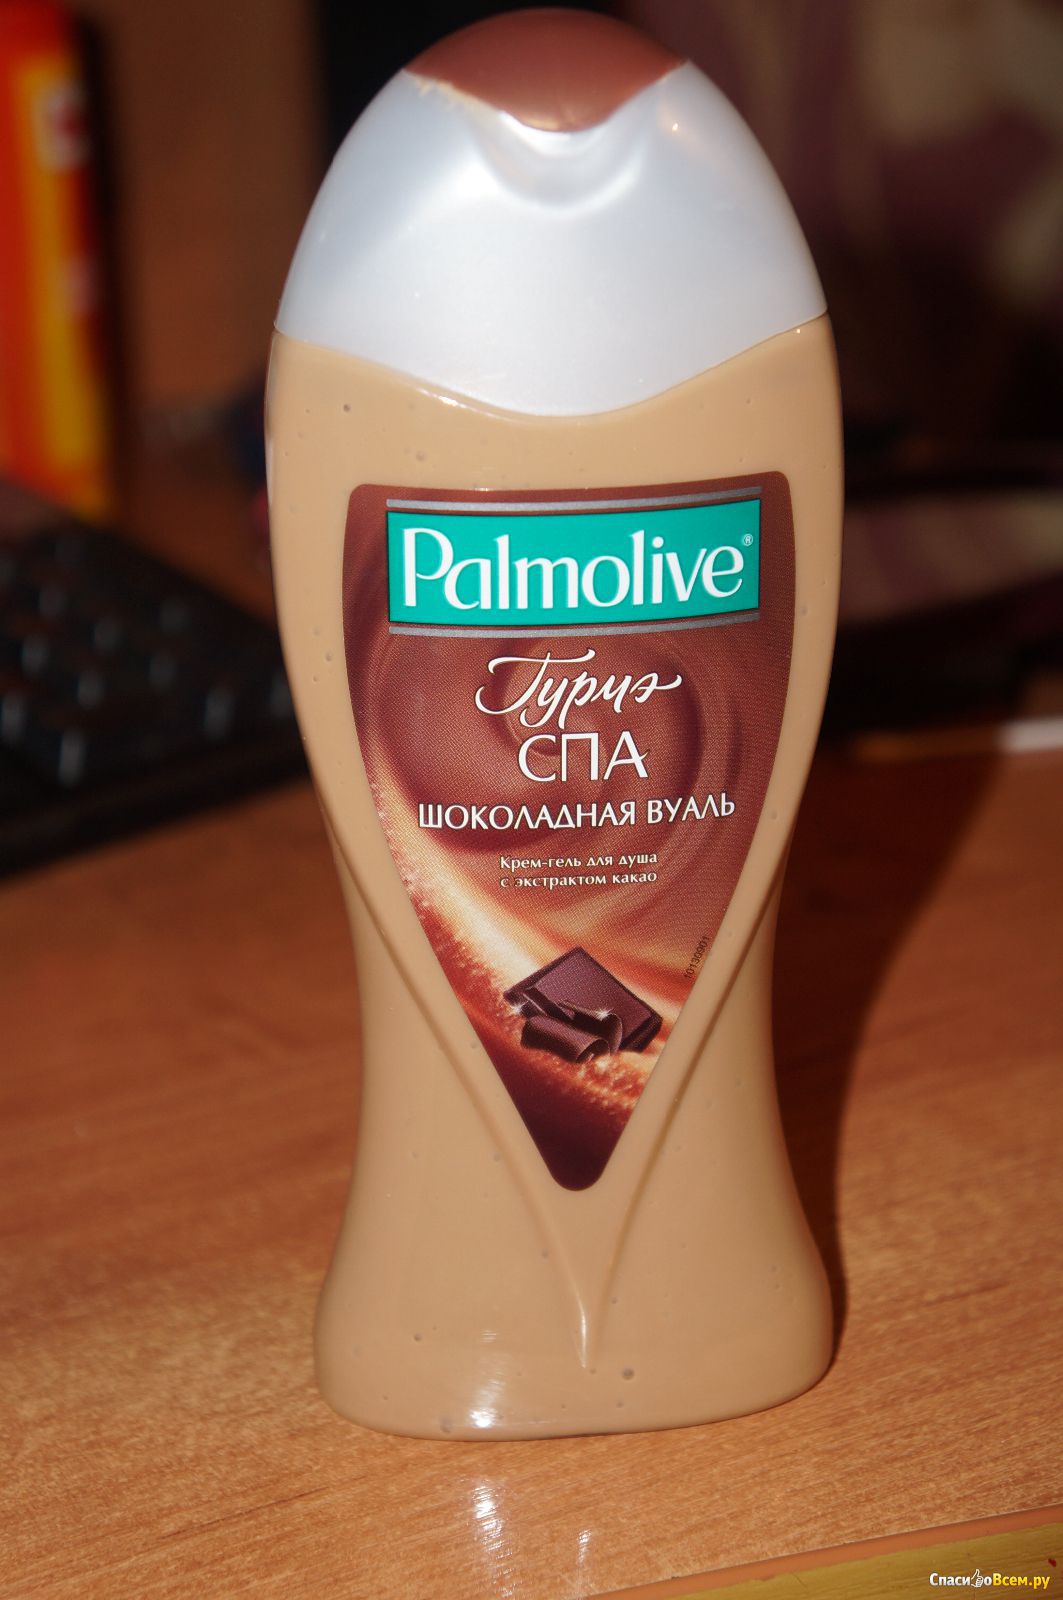 Шоколадный гель для душа. Palmolive шоколадная вуаль. Крем-гель для душа Palmolive Гурмэ спа шоколадная вуаль. Палмолив шоколадная вуаль. Палмолив гель шоколадная вуаль.